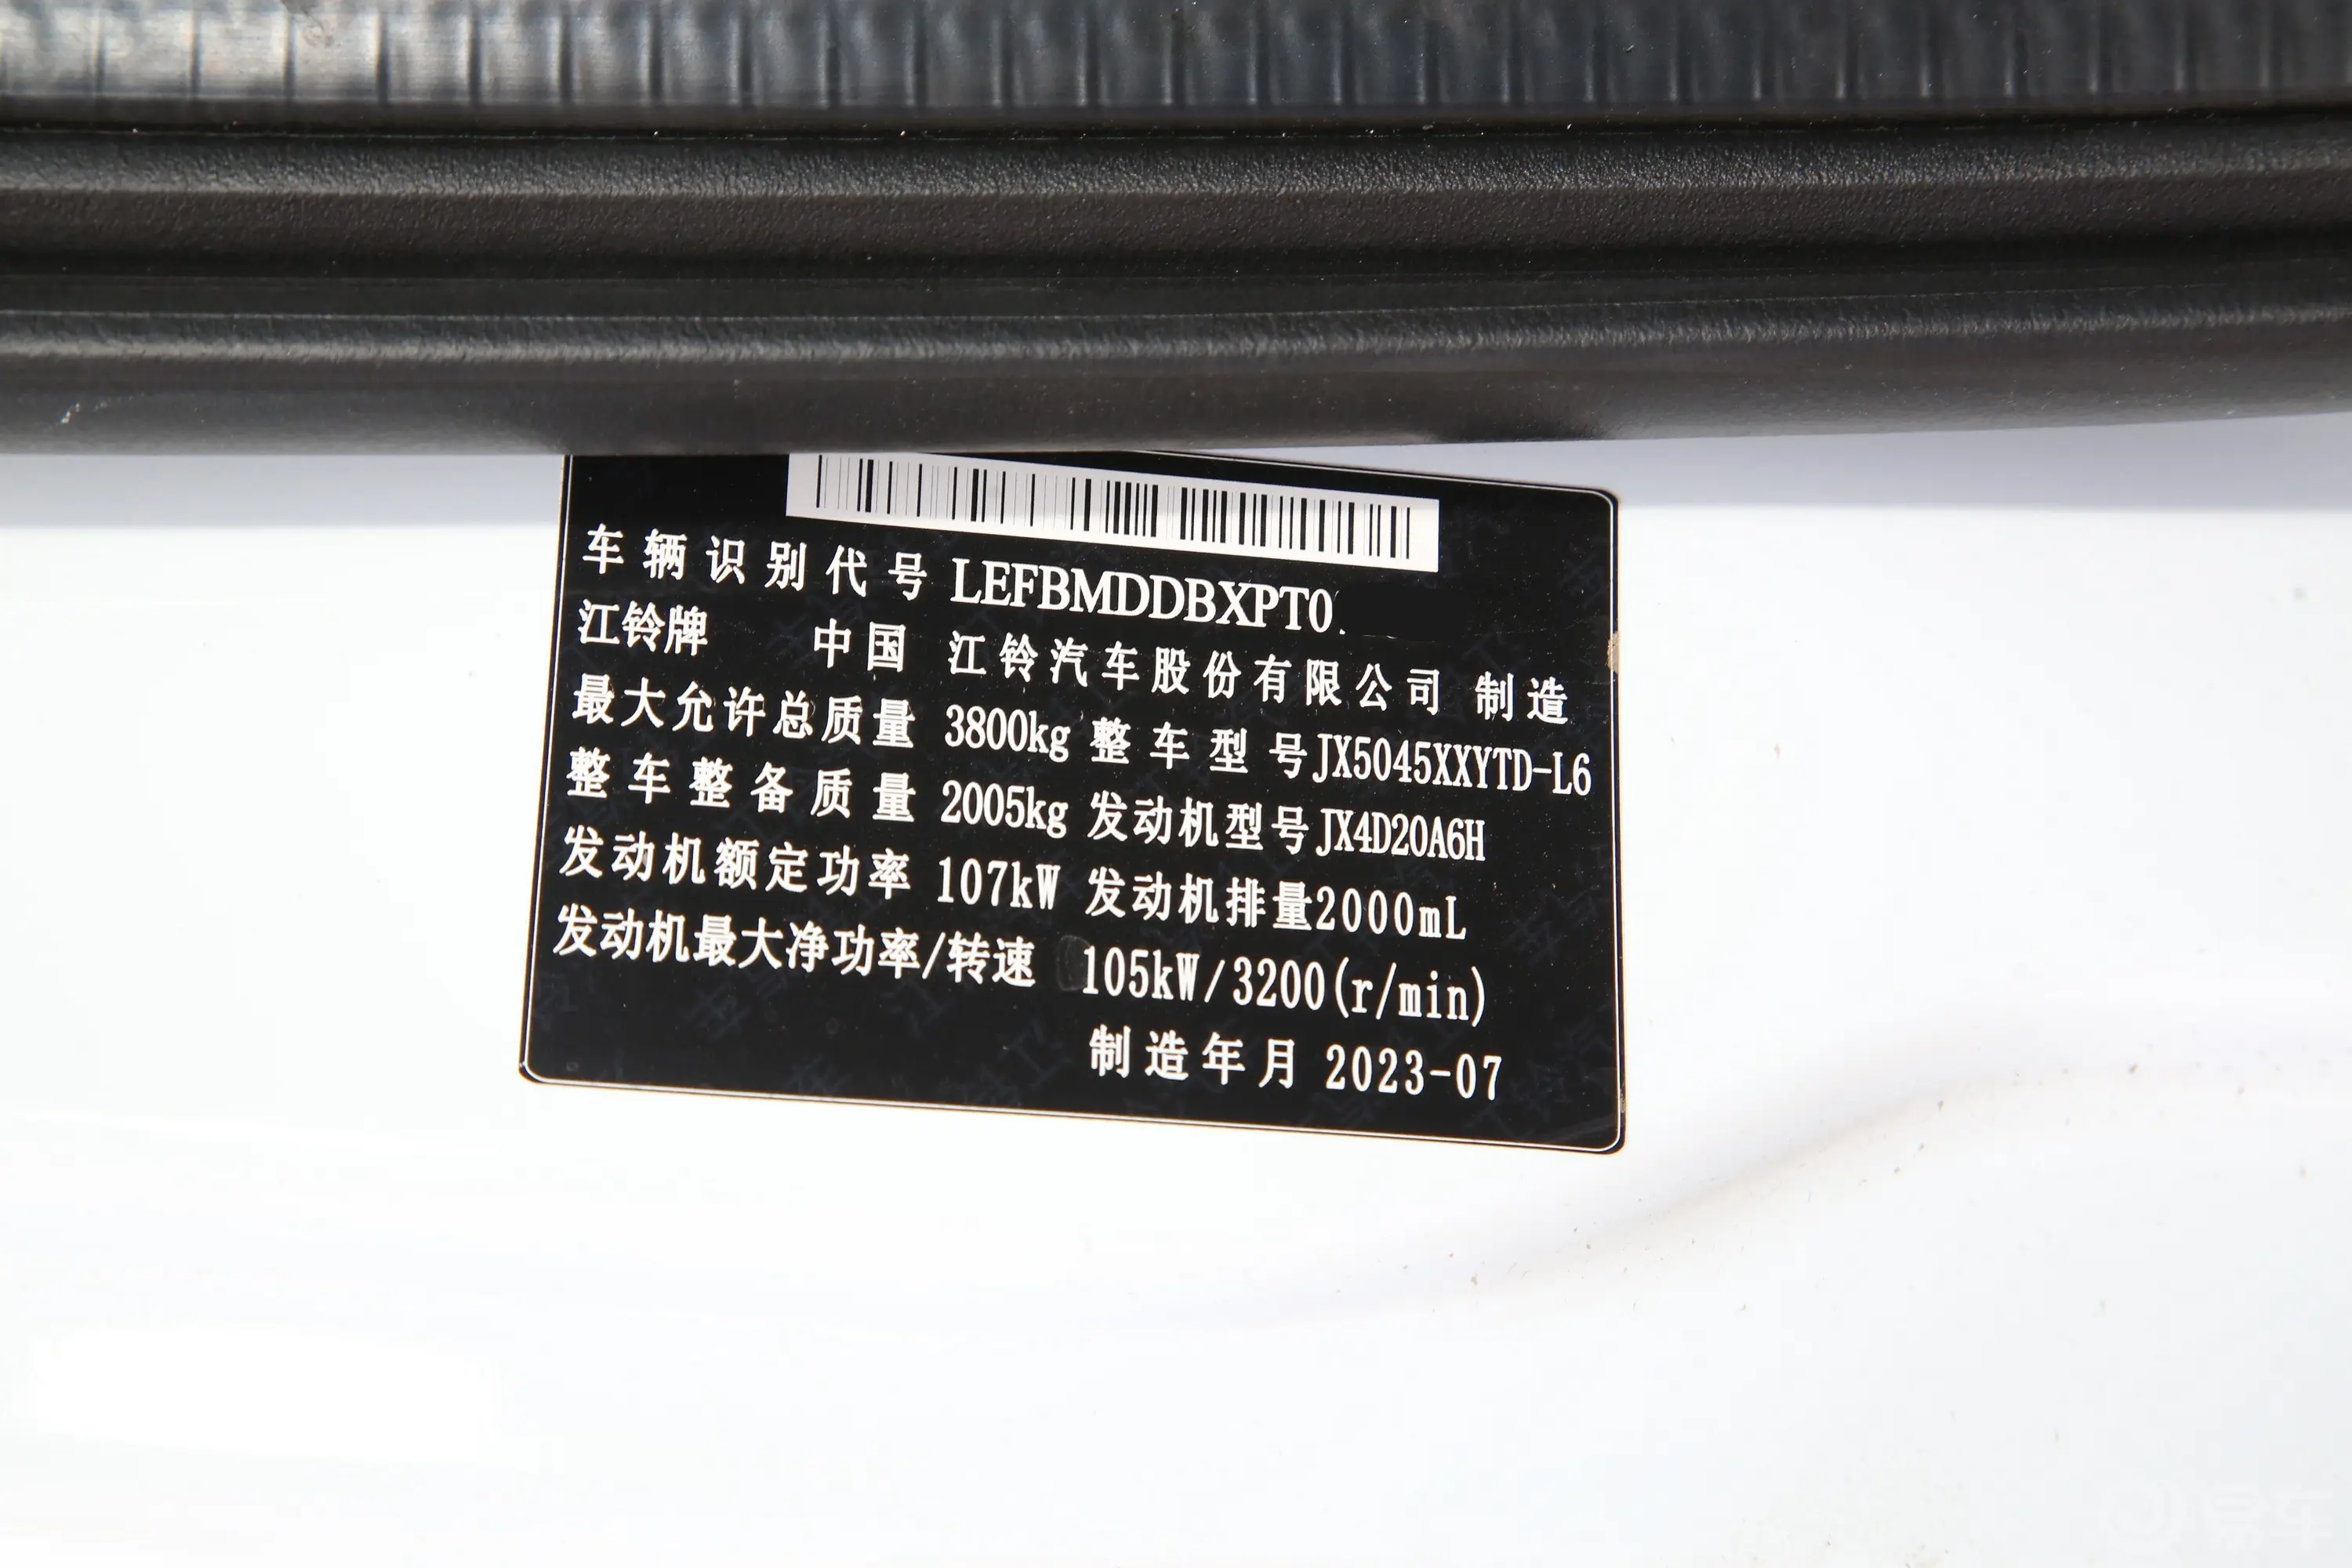 江铃福顺2.0T 手动短轴中顶商运型厢式运输车 3座 柴油车辆信息铭牌